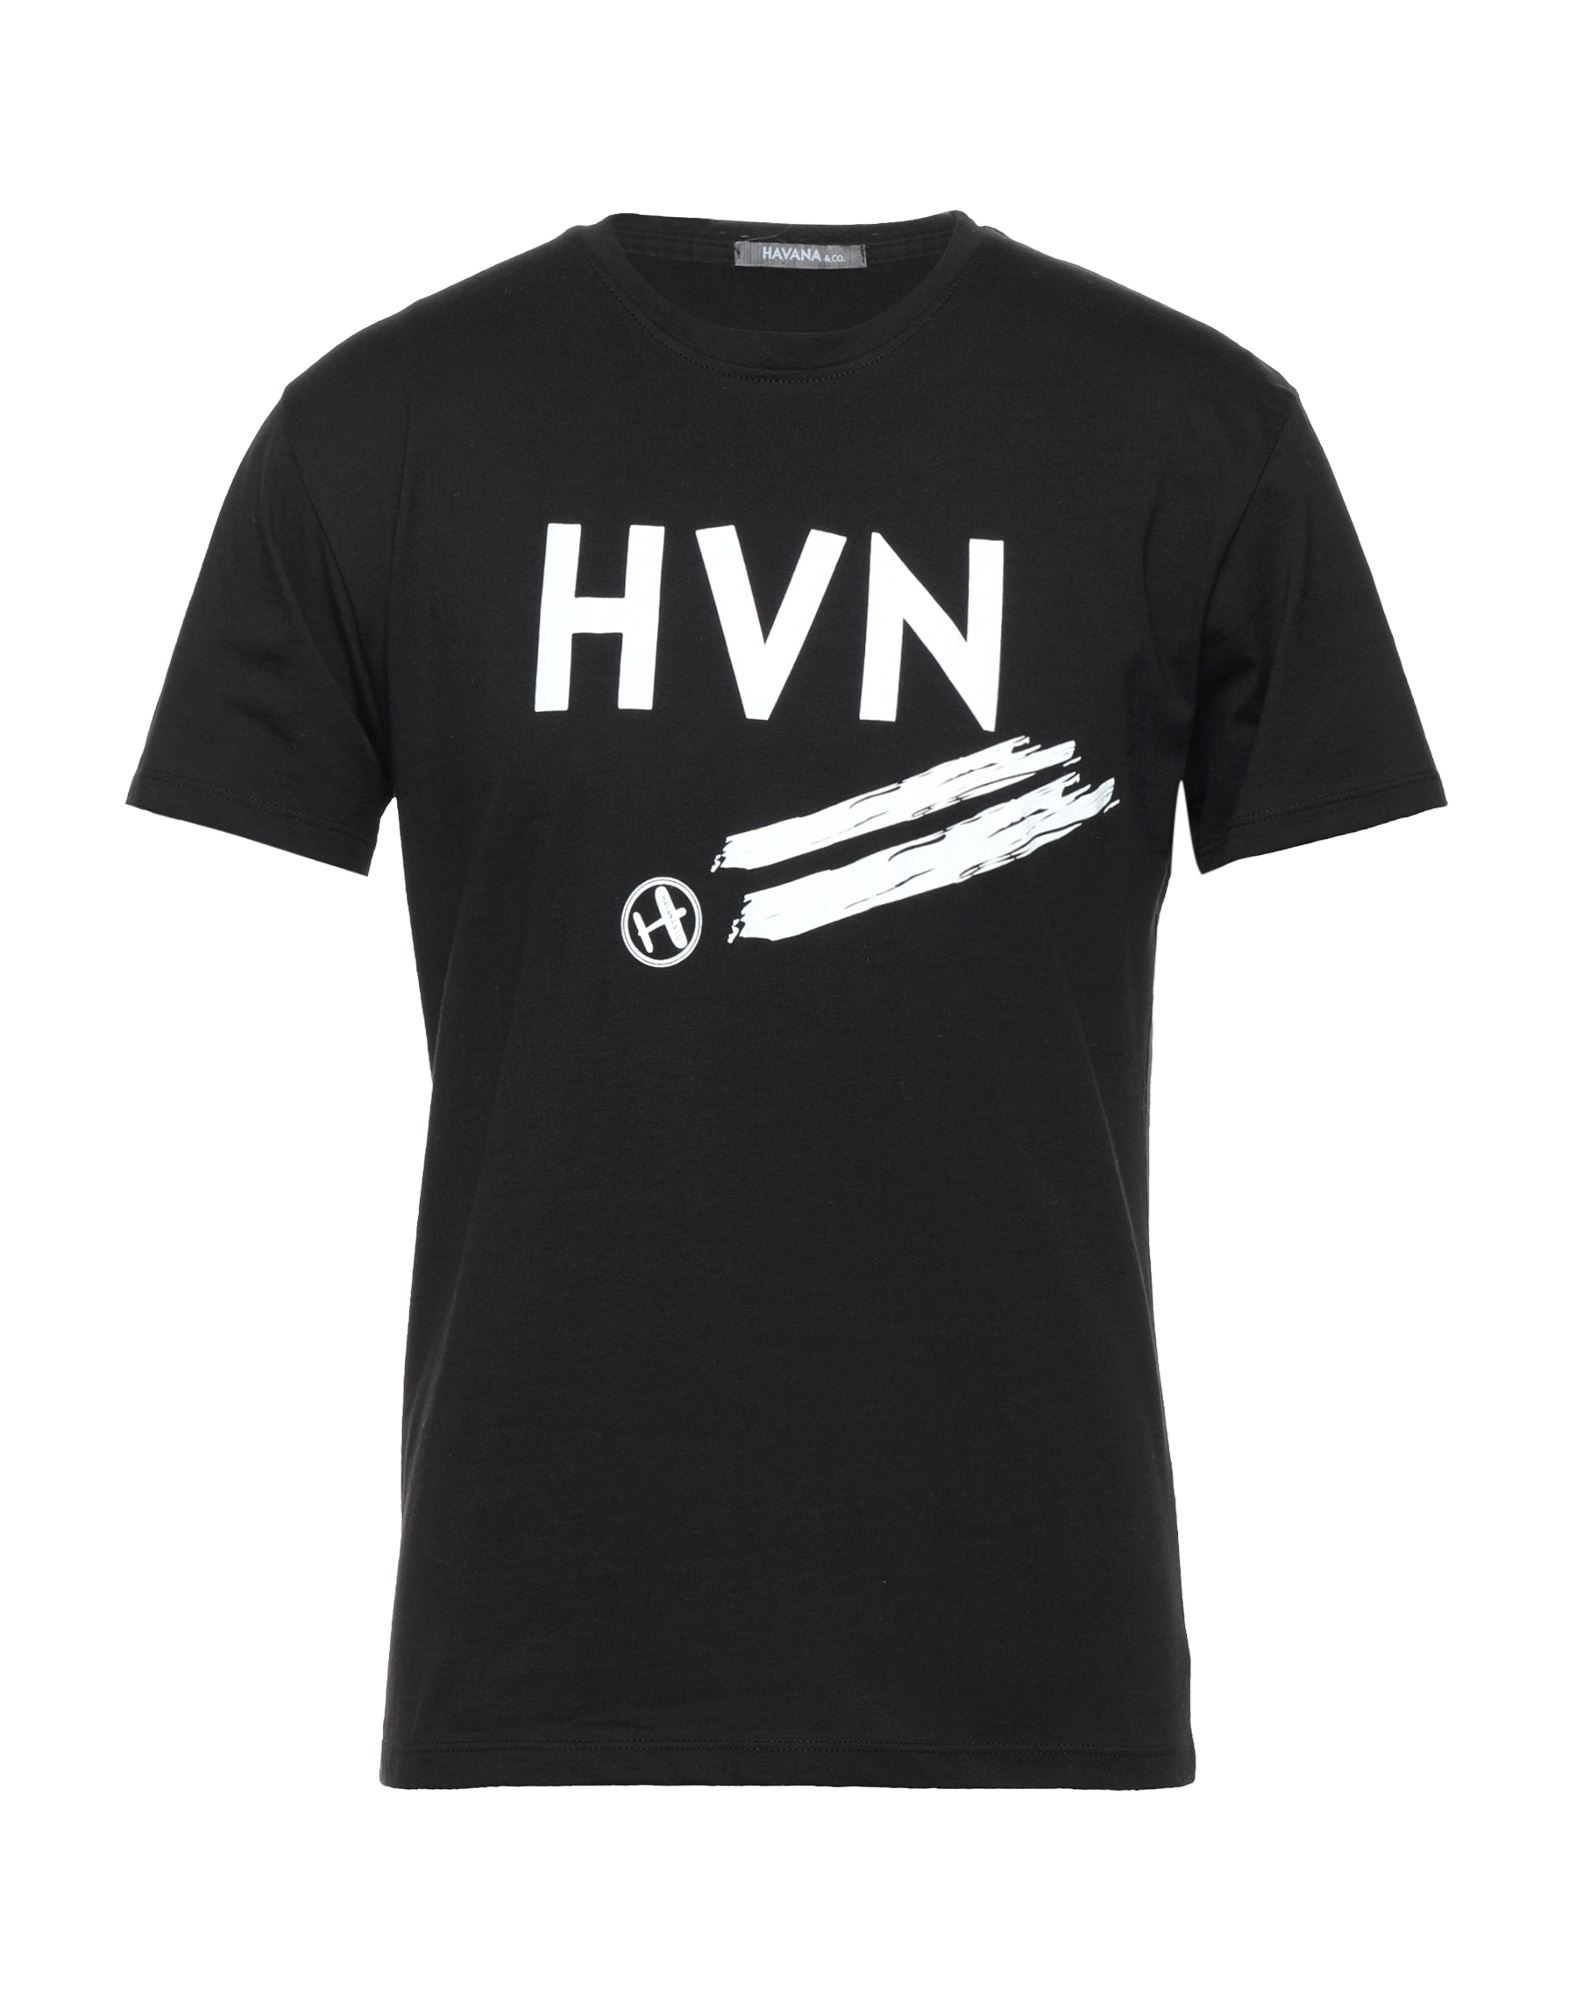 Havana & Co. T-shirts In Black